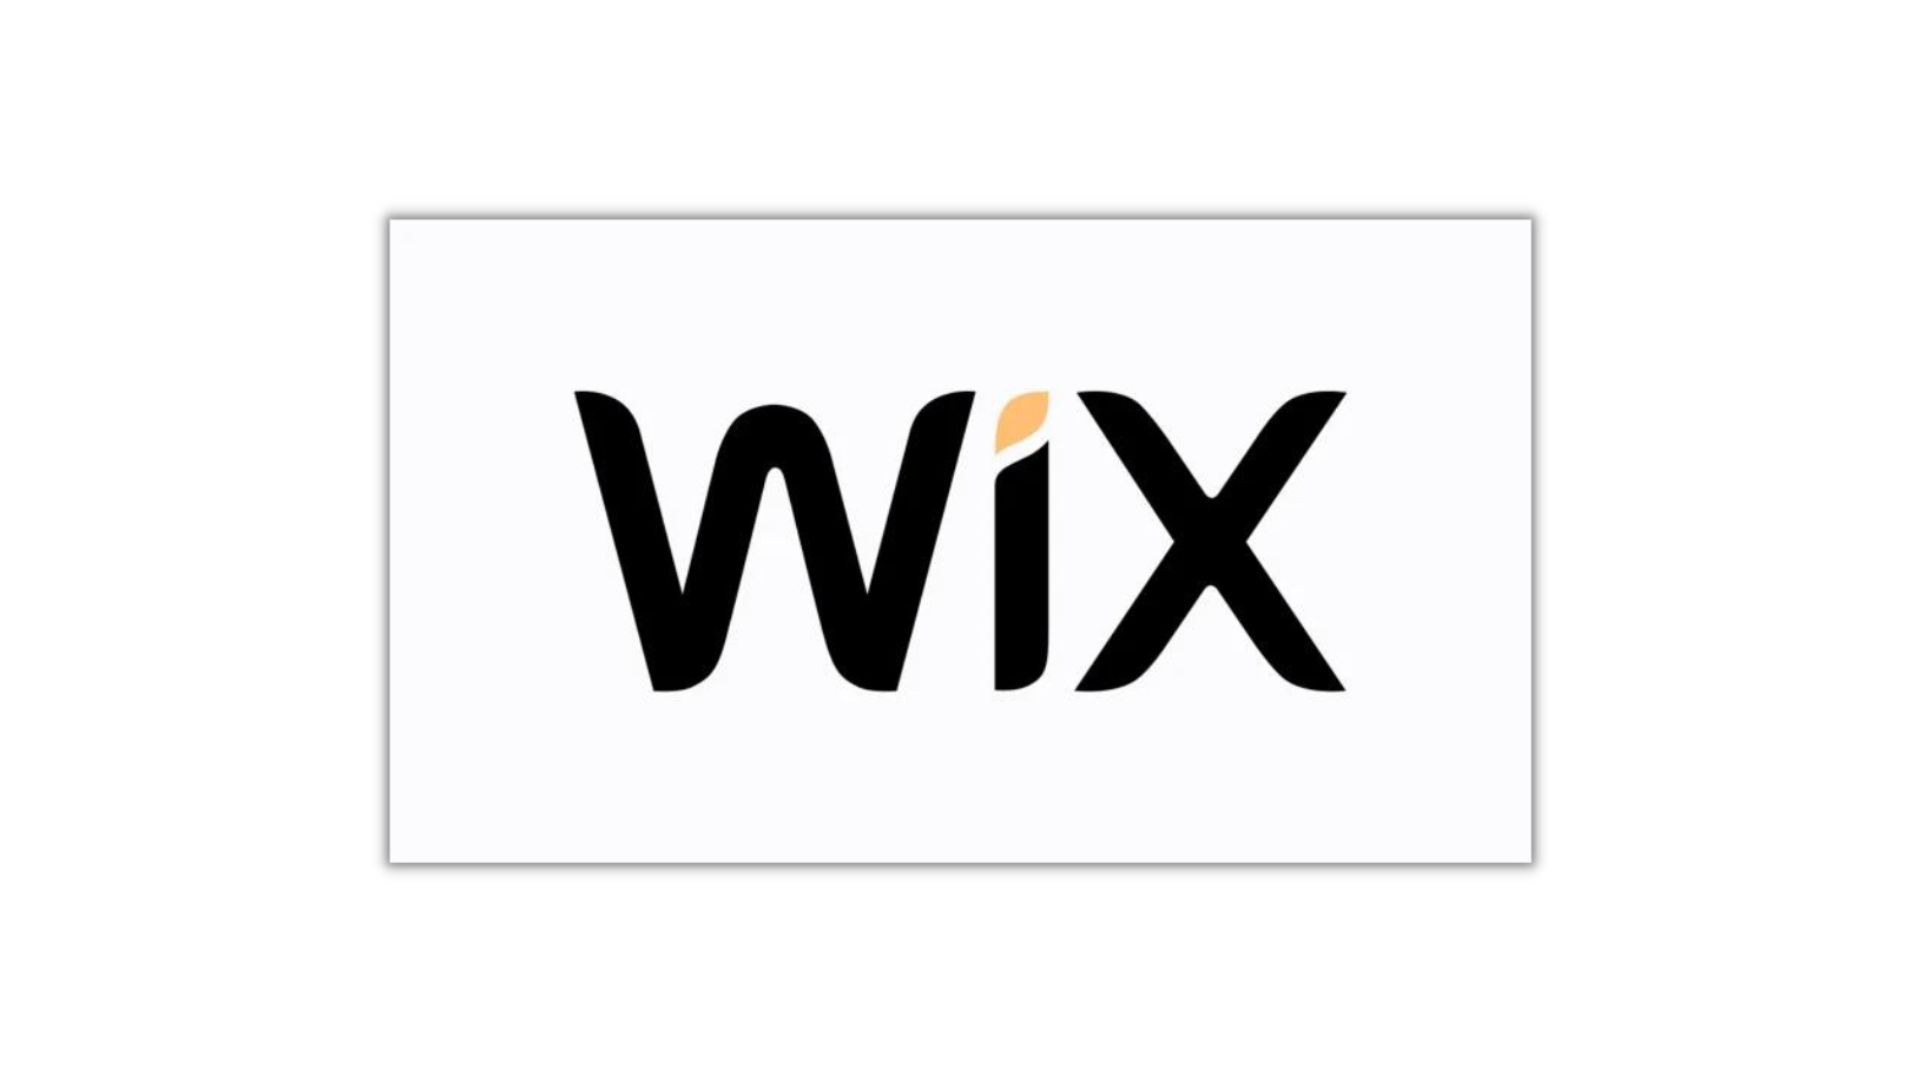 wix adalah